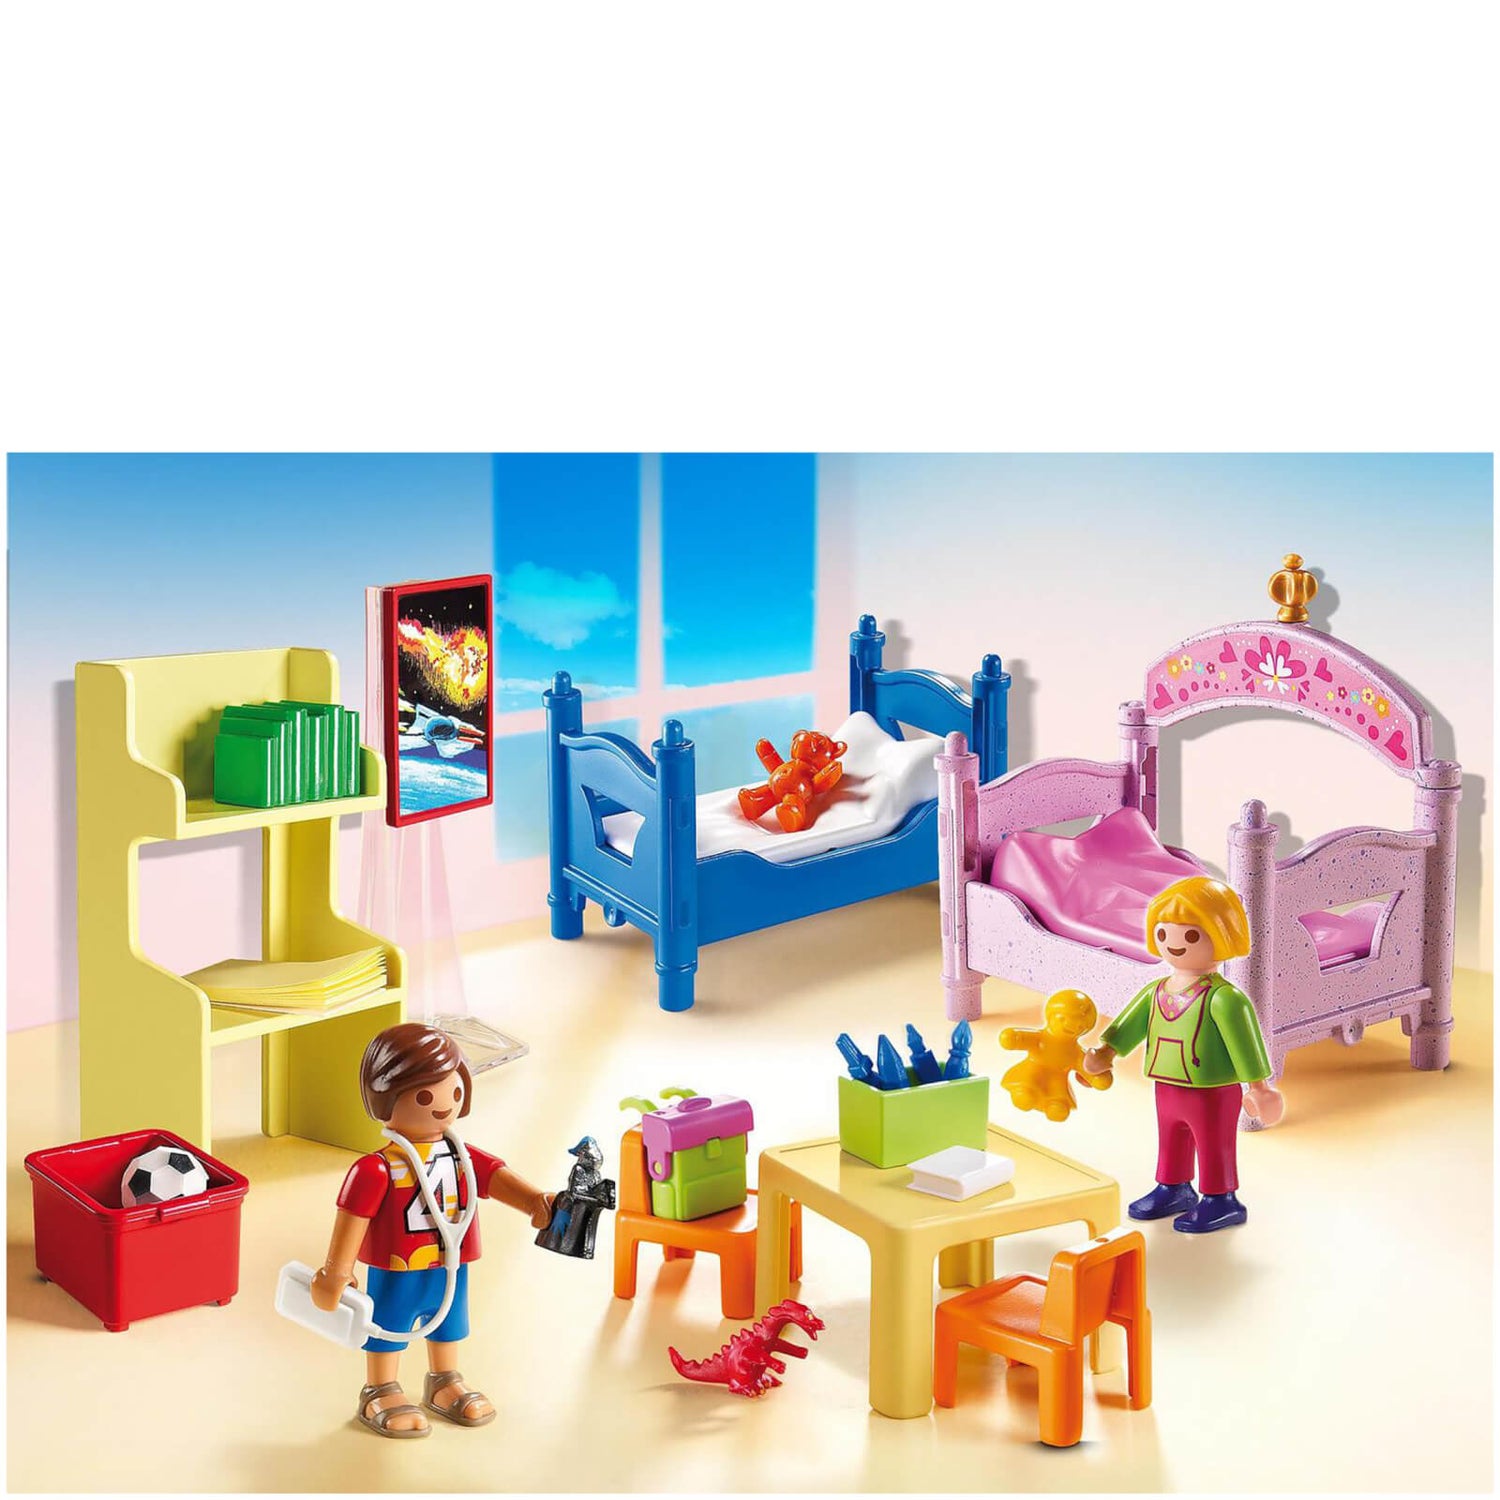 Playmobil : Chambre d'enfants avec lits superposés (5306)